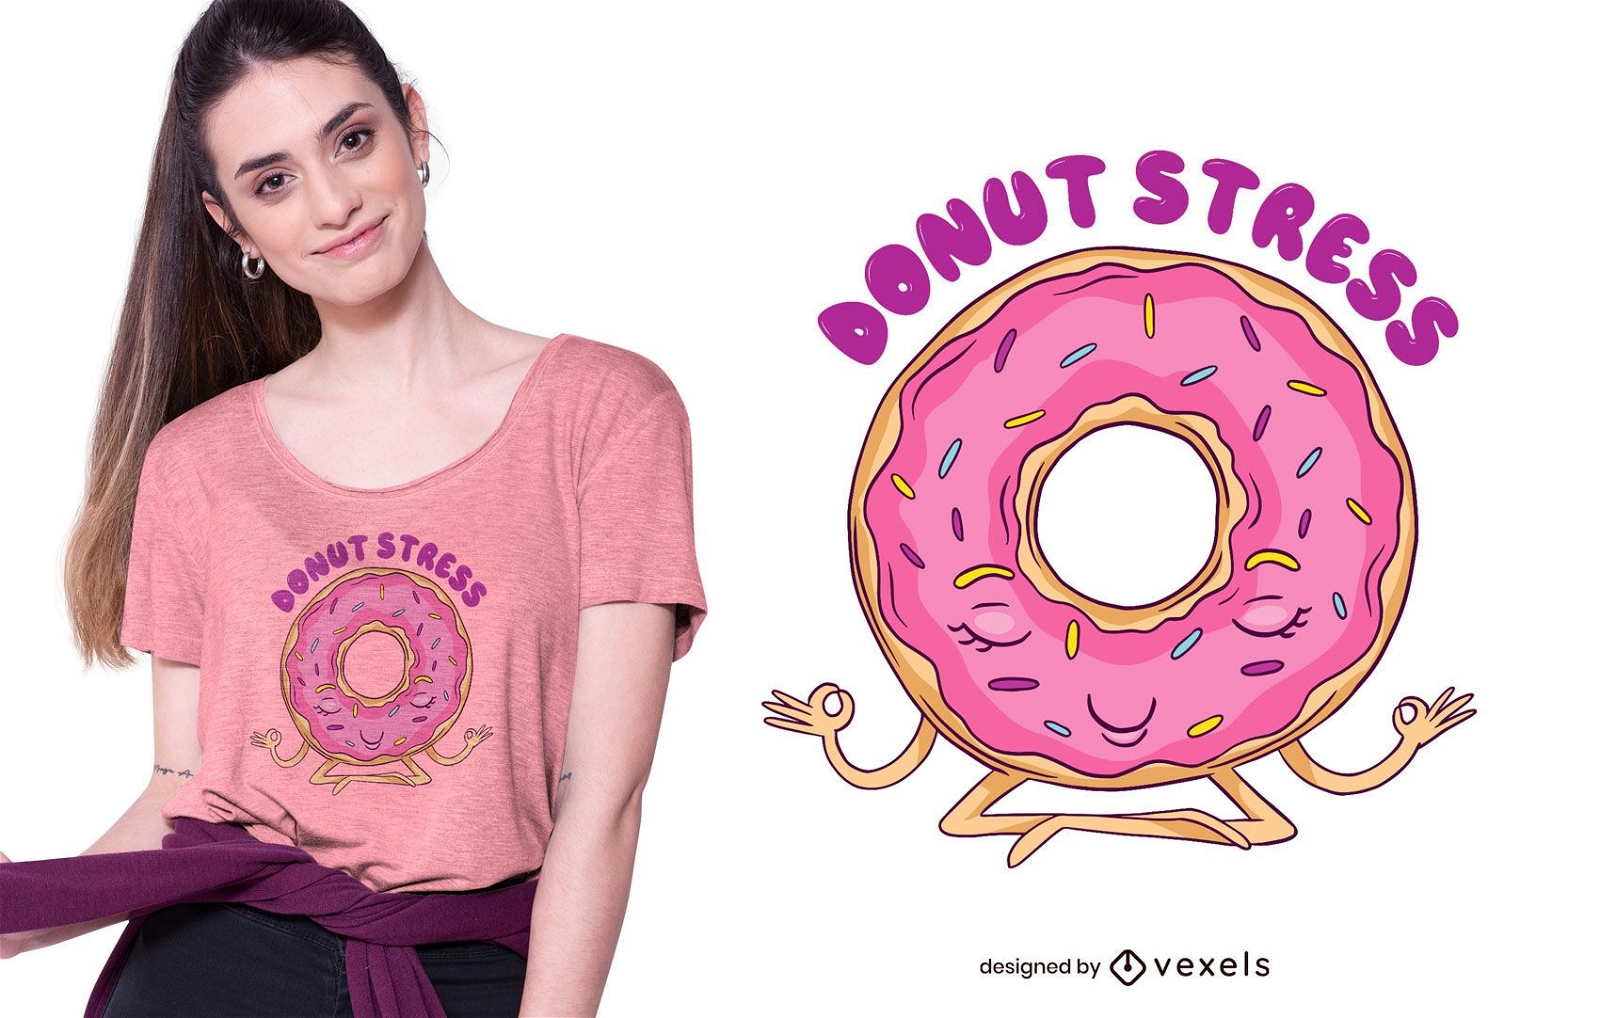 Donut stress t-shirt design